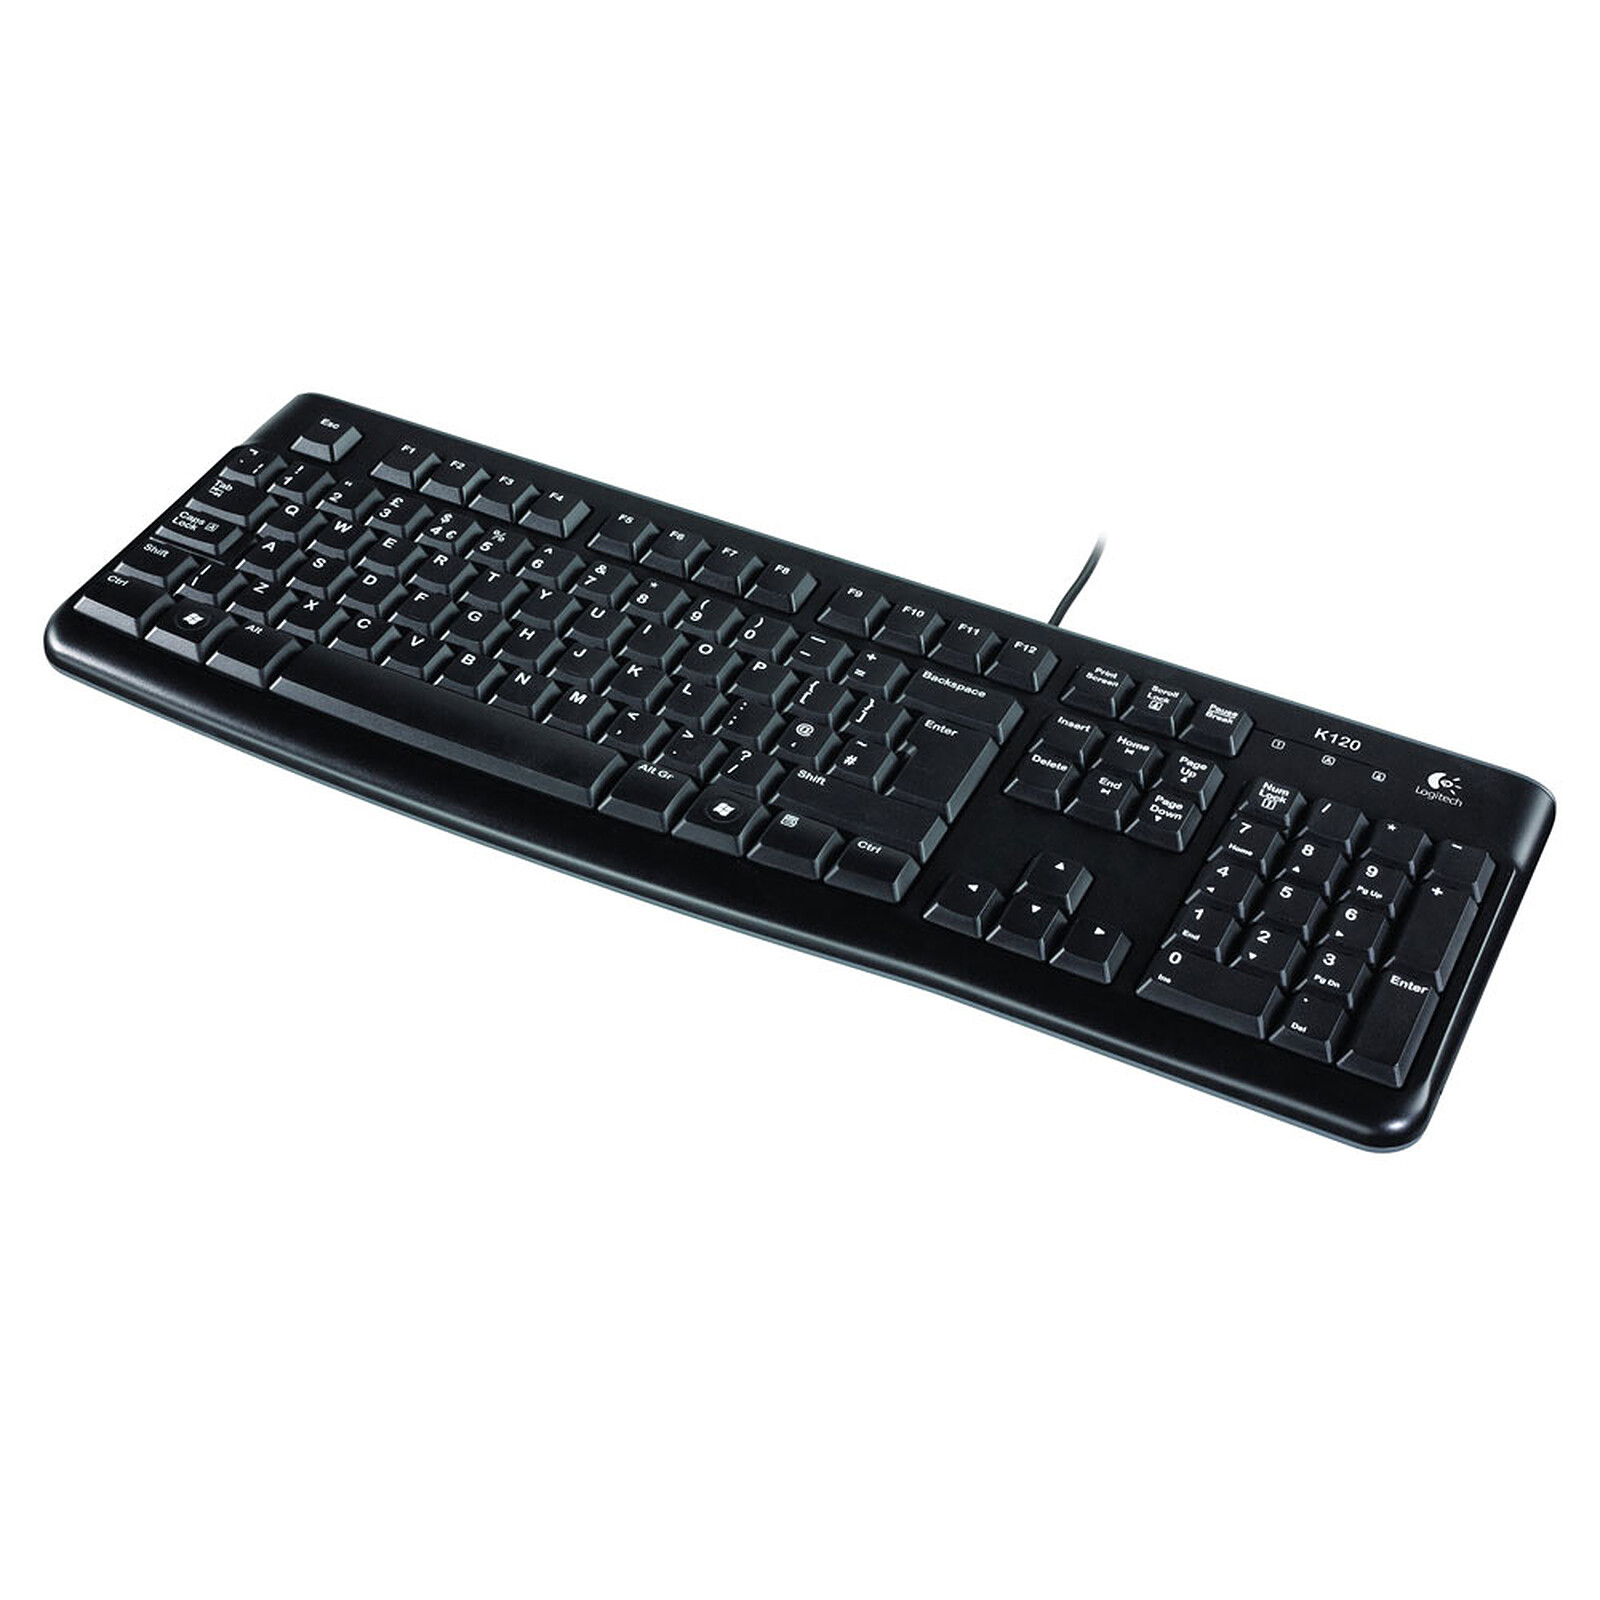 Logitech Keyboard K120 for LDLC - Keyboard 3-year Business - warranty